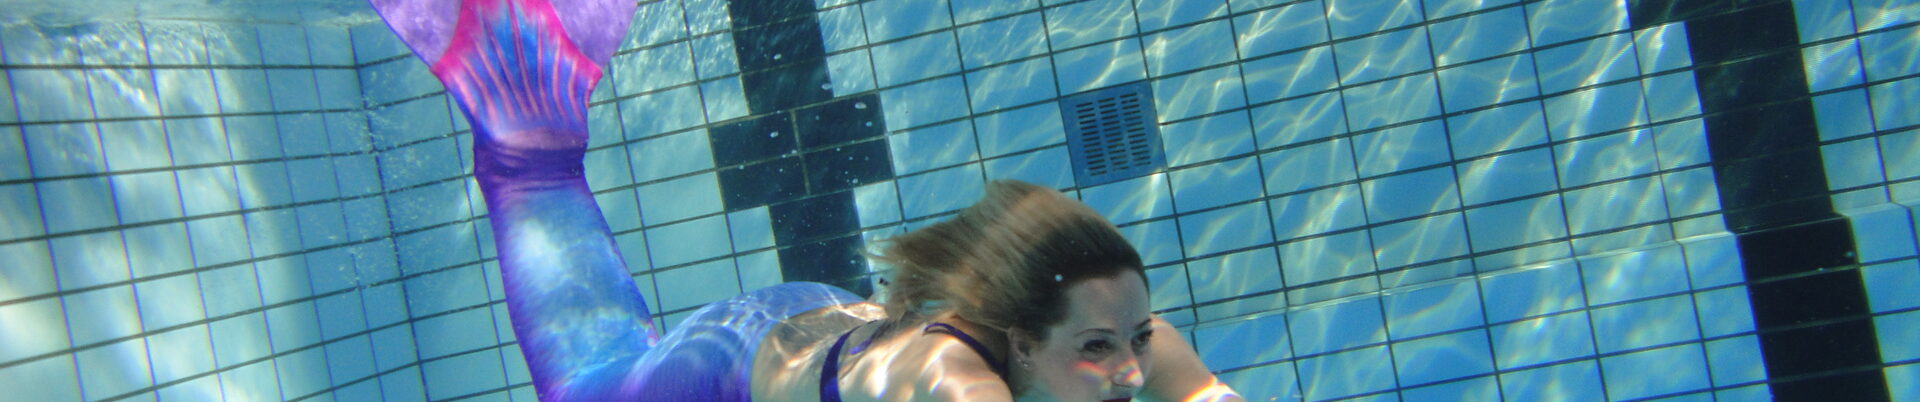 Aufnahme einer Frau, die mit einem Meerjungfrauenkostüm schwimmt